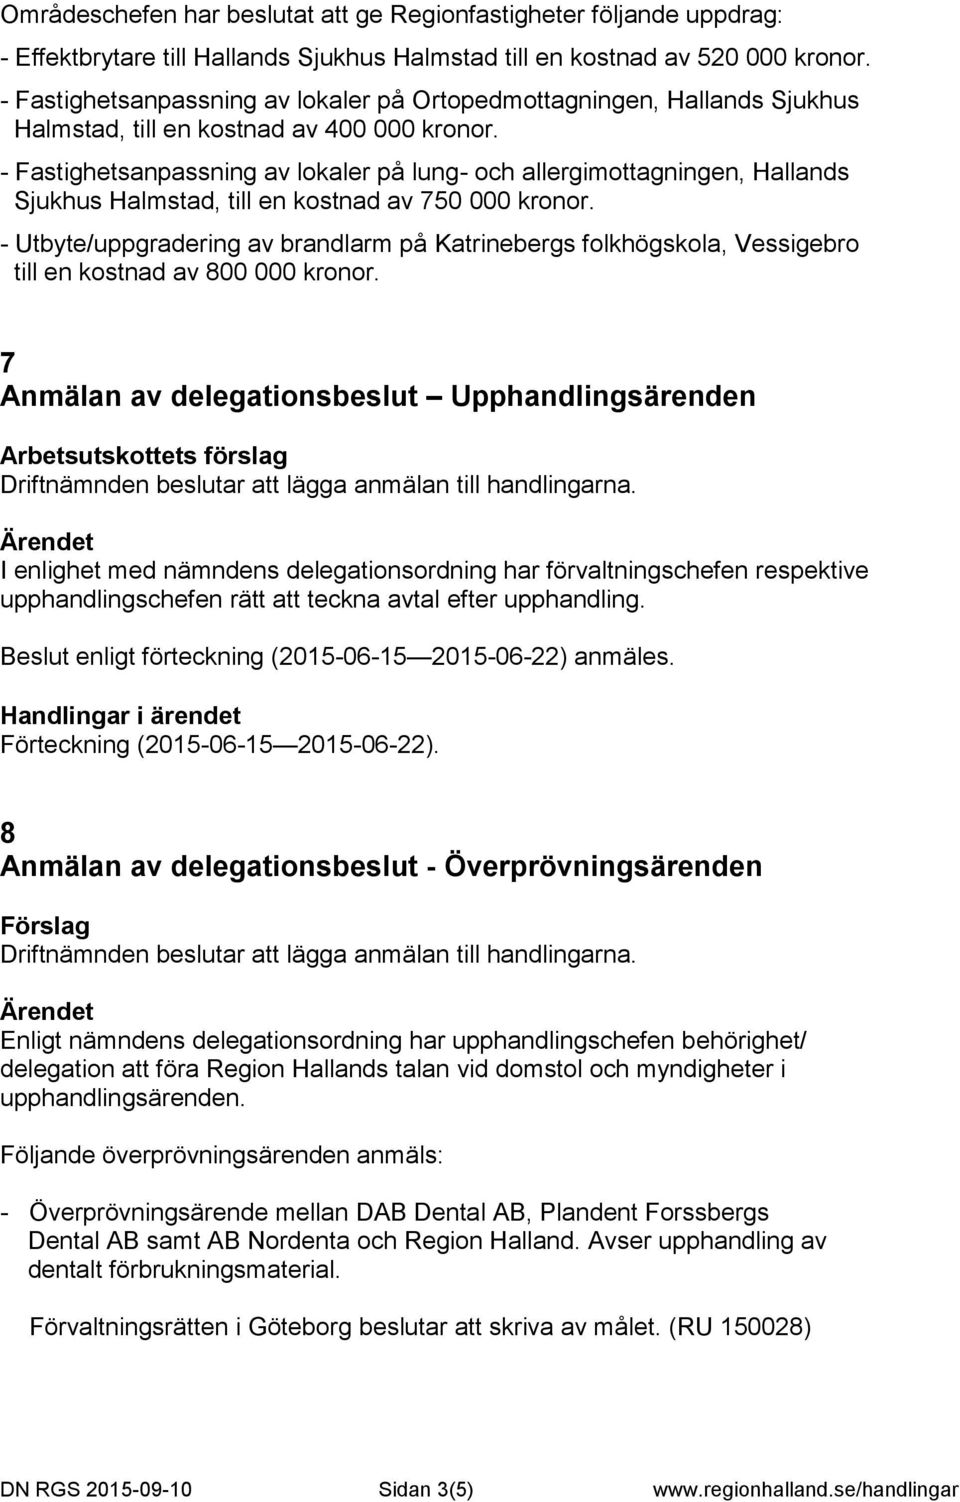 - Fastighetsanpassning av lokaler på lung- och allergimottagningen, Hallands Sjukhus Halmstad, till en kostnad av 750 000 kronor.